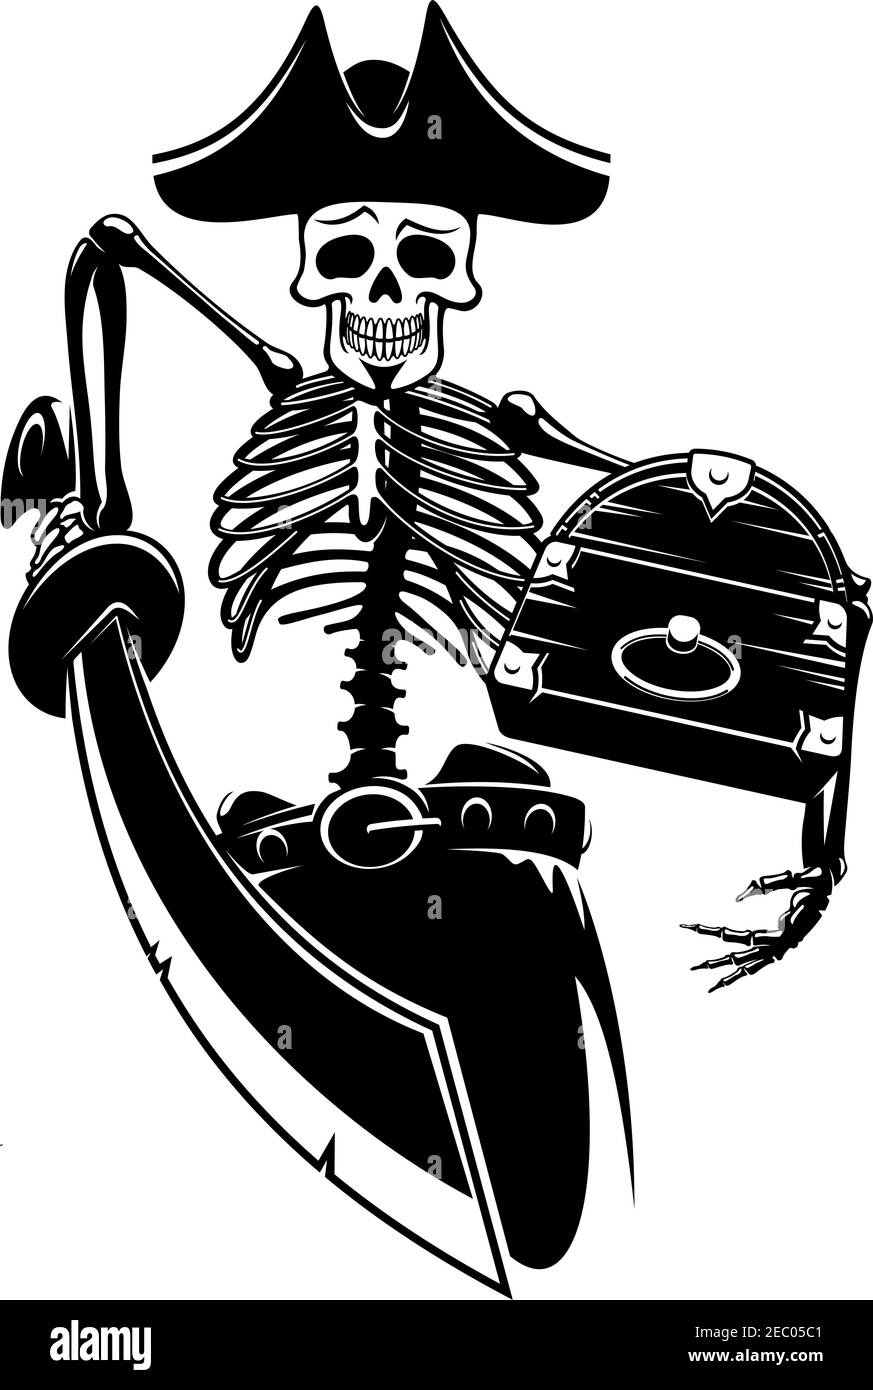 Squelette du capitaine pirate qui garde le coffre du Trésor avec une épée. Pour la piraterie, la mascotte, la marine et le design d'aventure Illustration de Vecteur